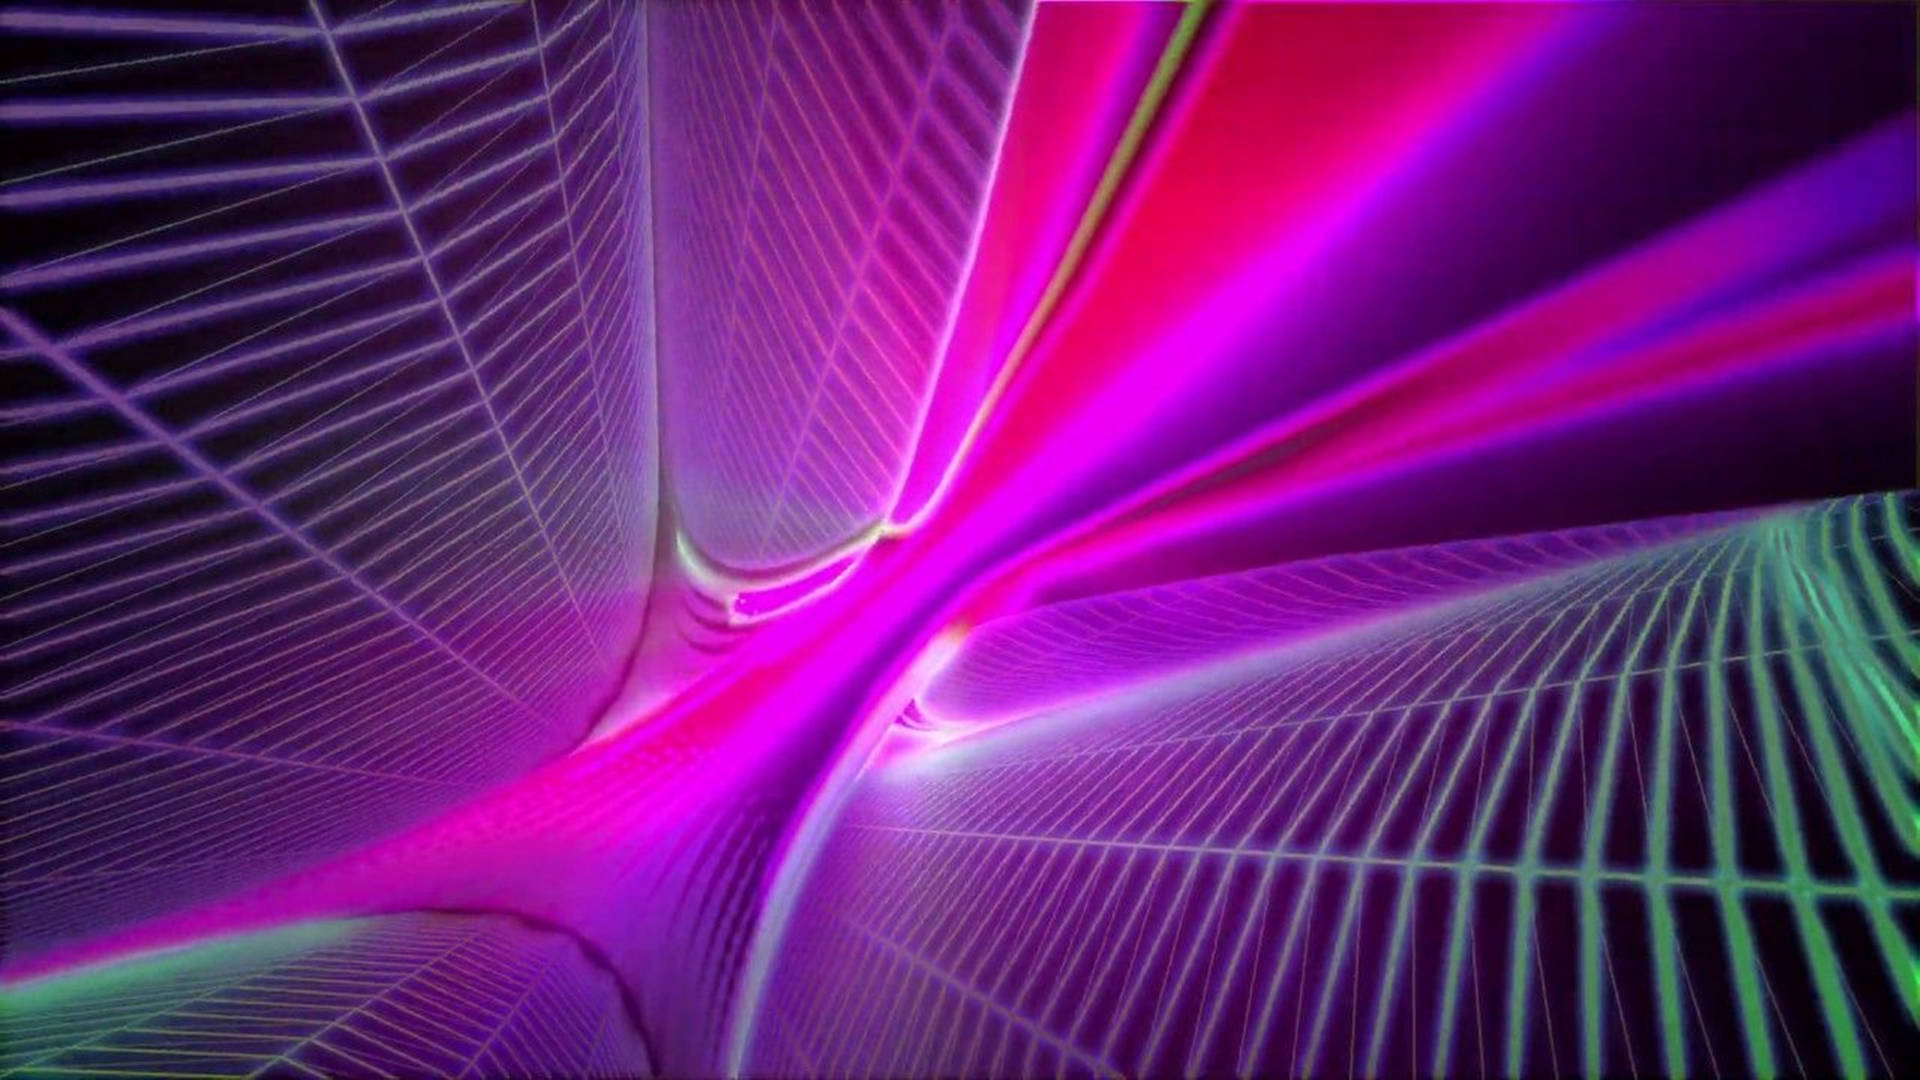 [100+] Neon Purple 4k Wallpapers | Wallpapers.com